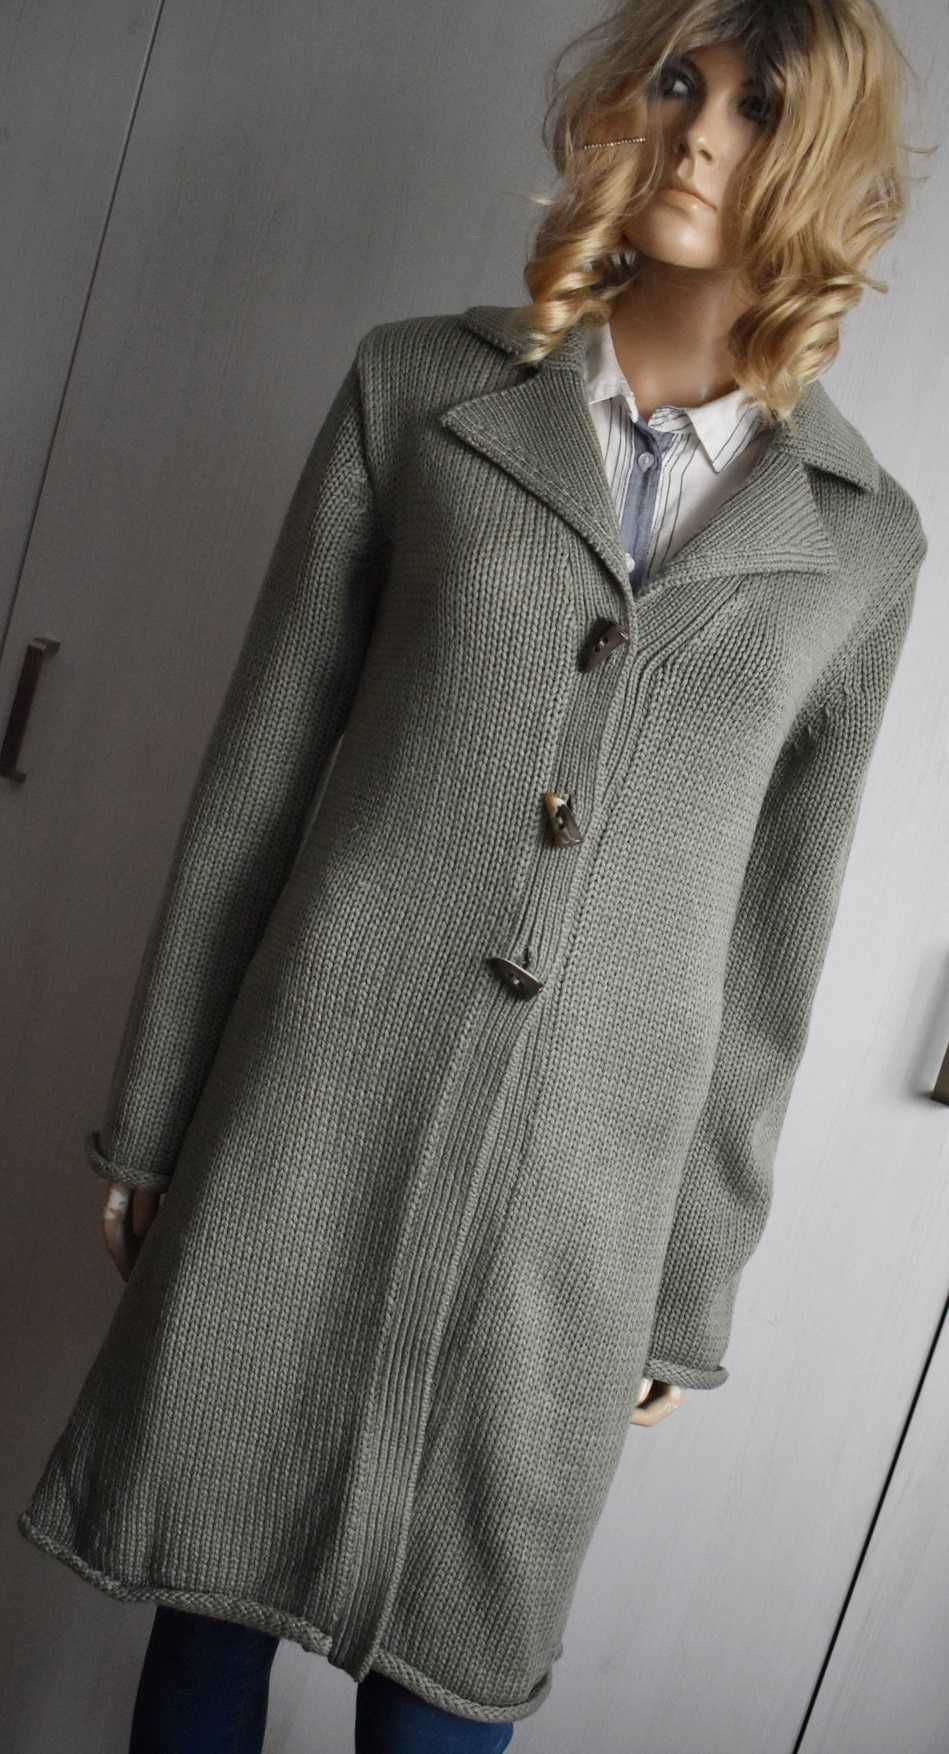 Sweter S M 36 kardigan Miętowy dzianinowy ciepły H&M gruby płaszcz